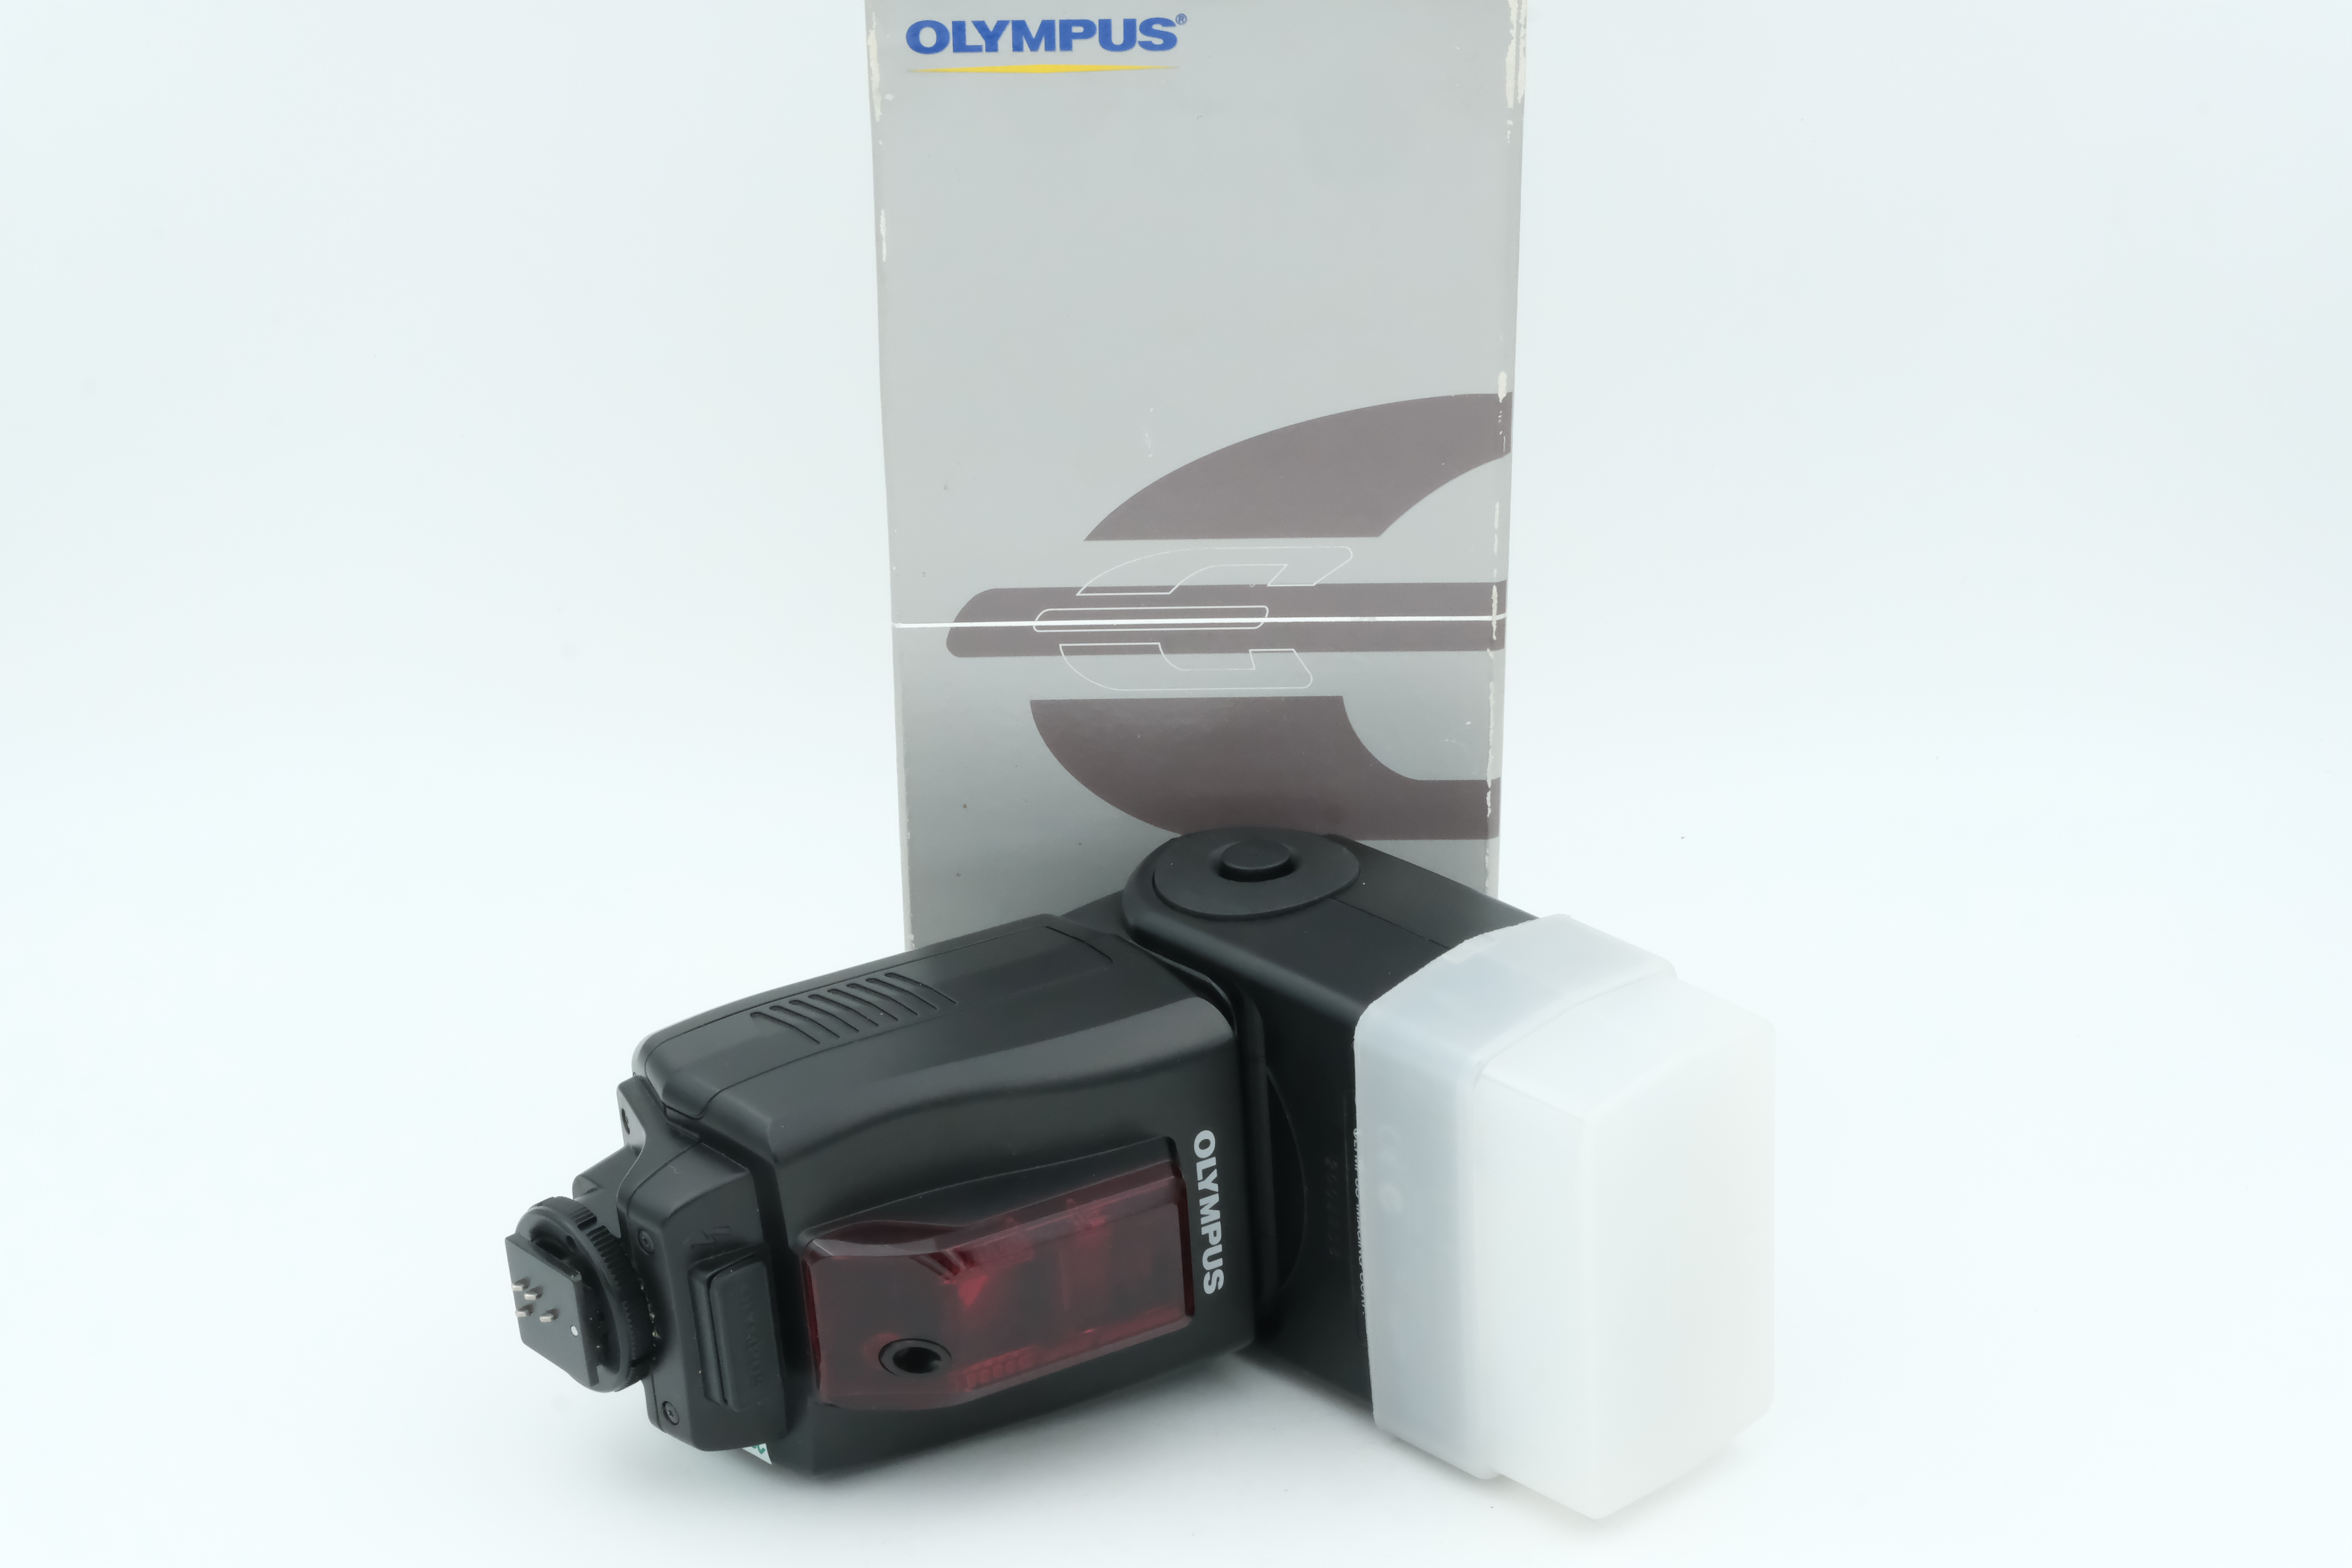 Olympus FL- 50 Blitz Digital